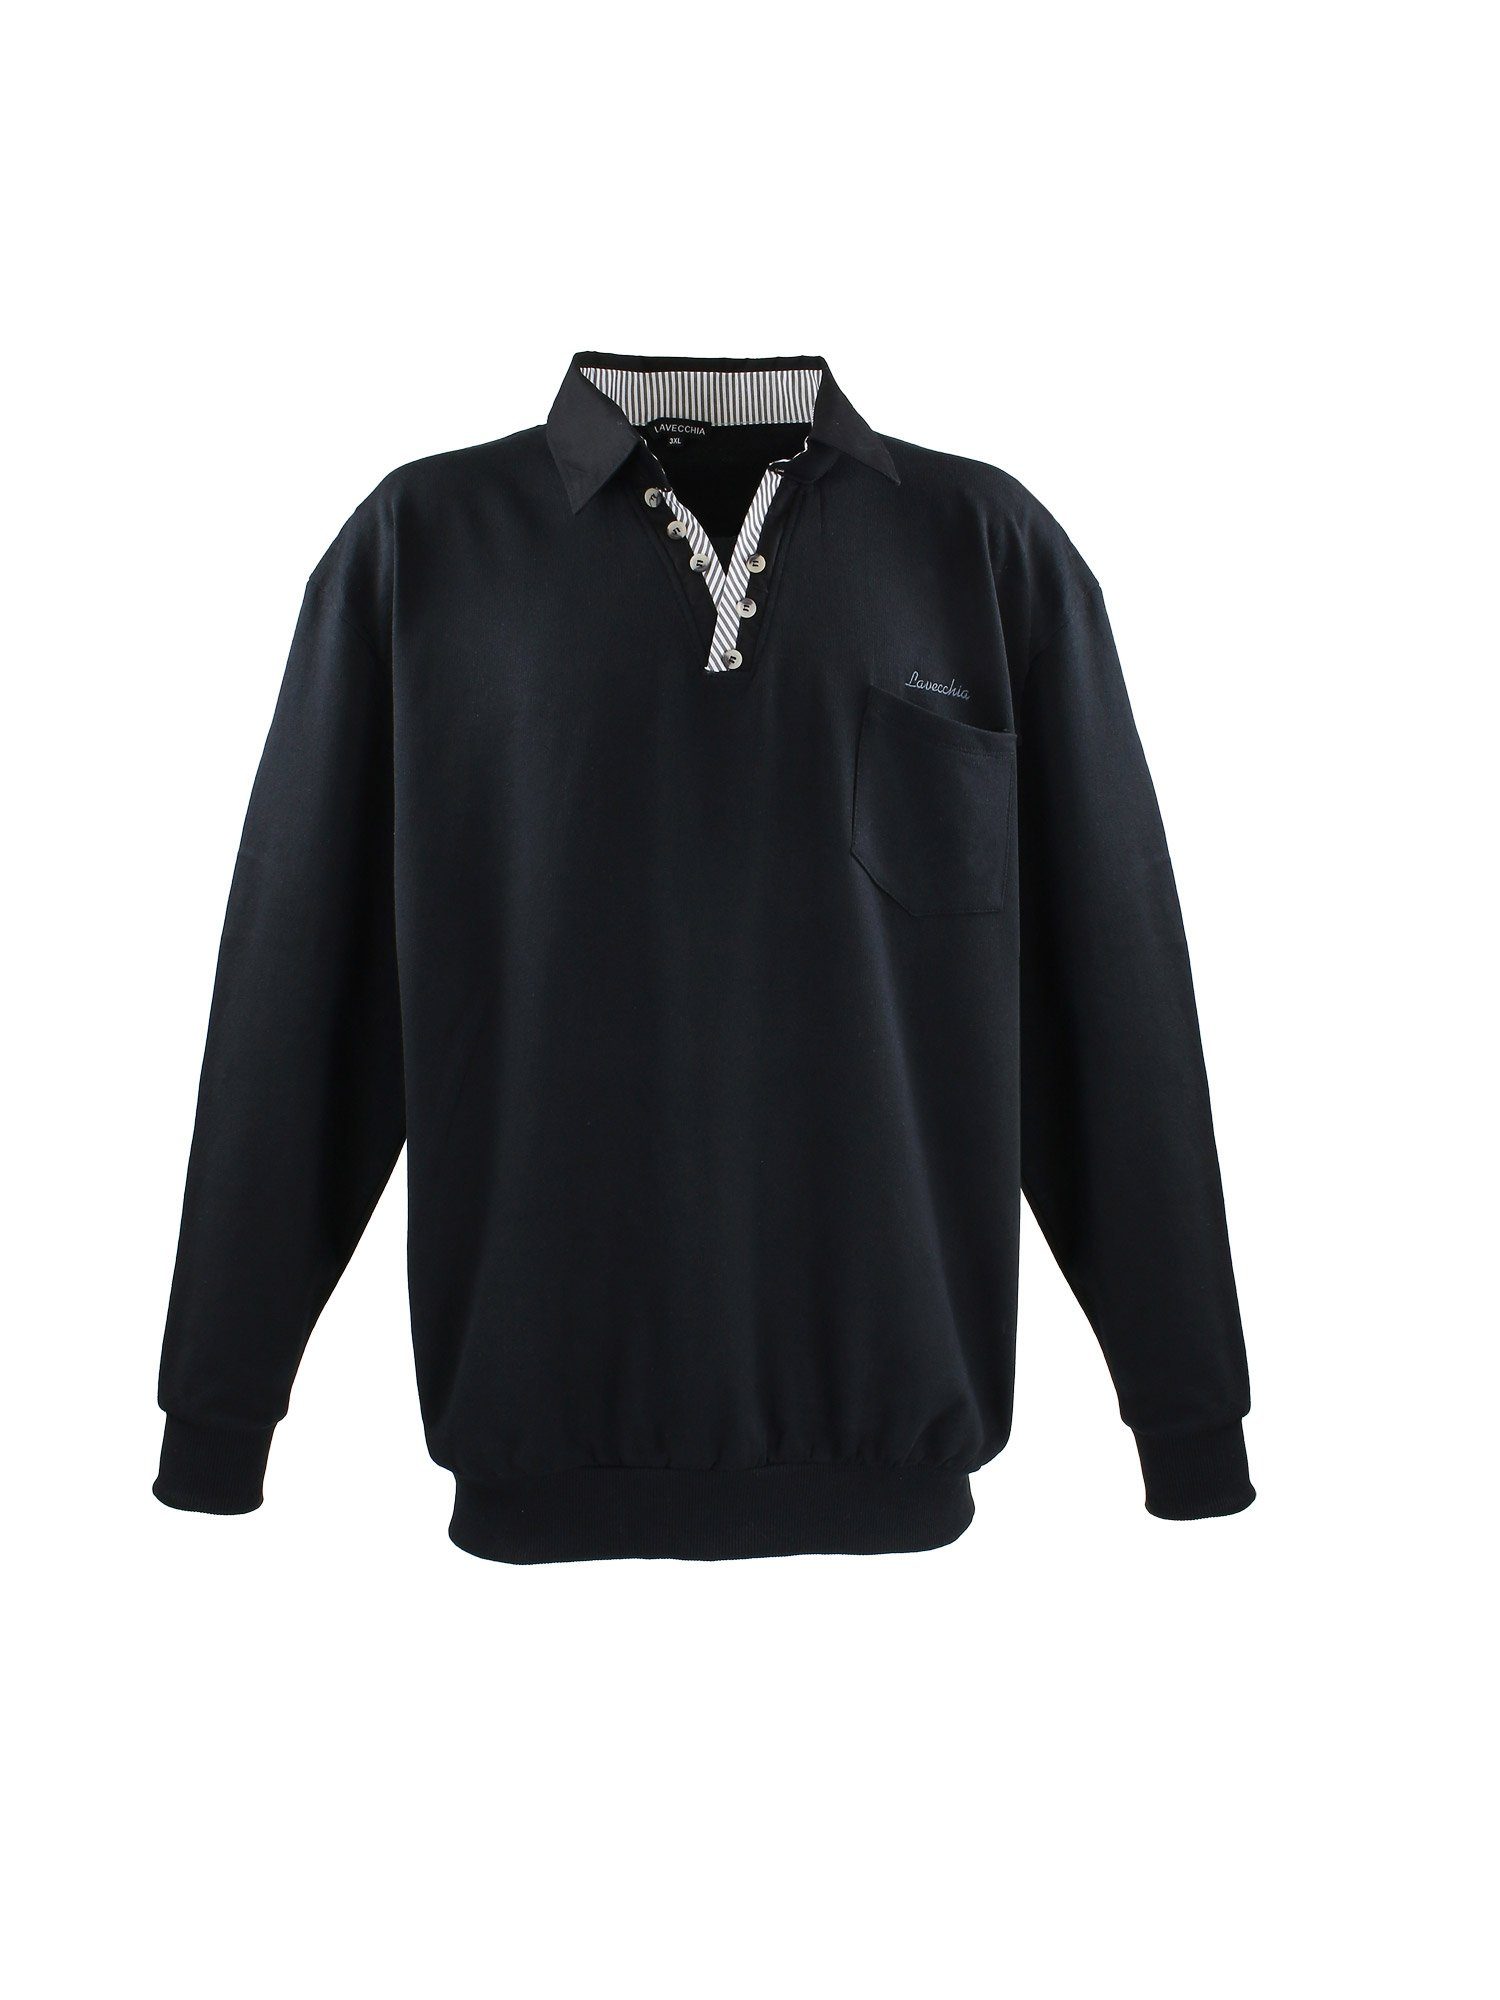 Lavecchia Sweatshirt Übergrößen Sweater LV-602 Polo Langarmshirt schwarz